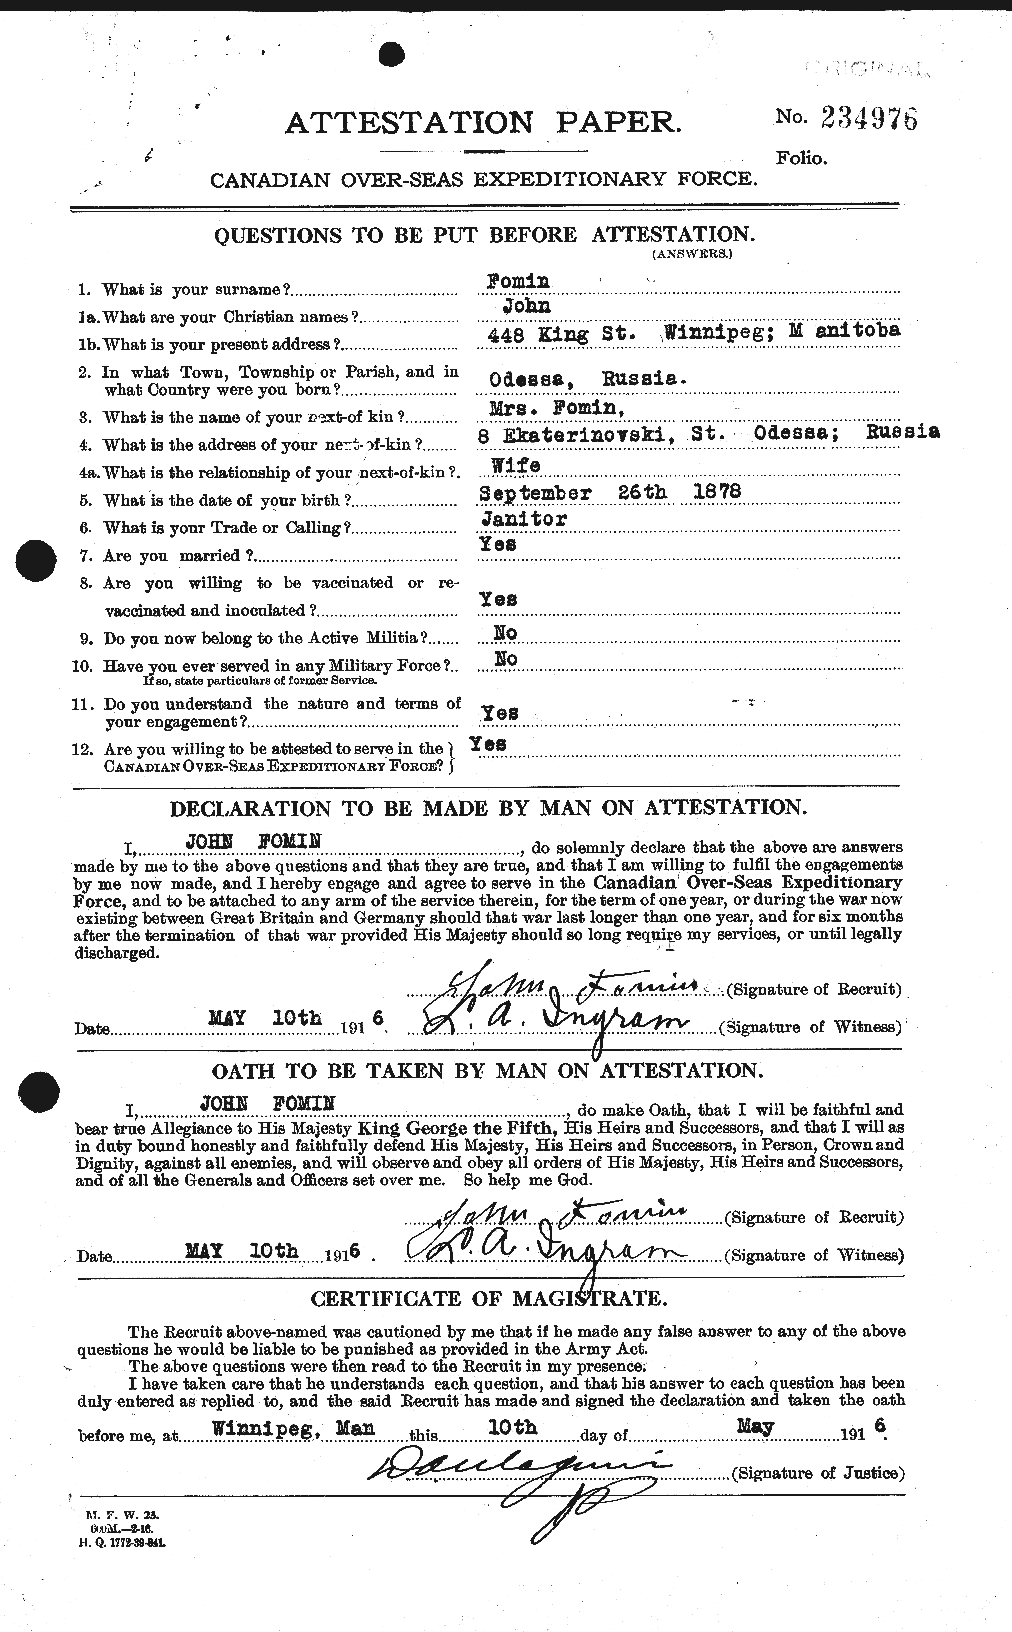 Dossiers du Personnel de la Première Guerre mondiale - CEC 328424a